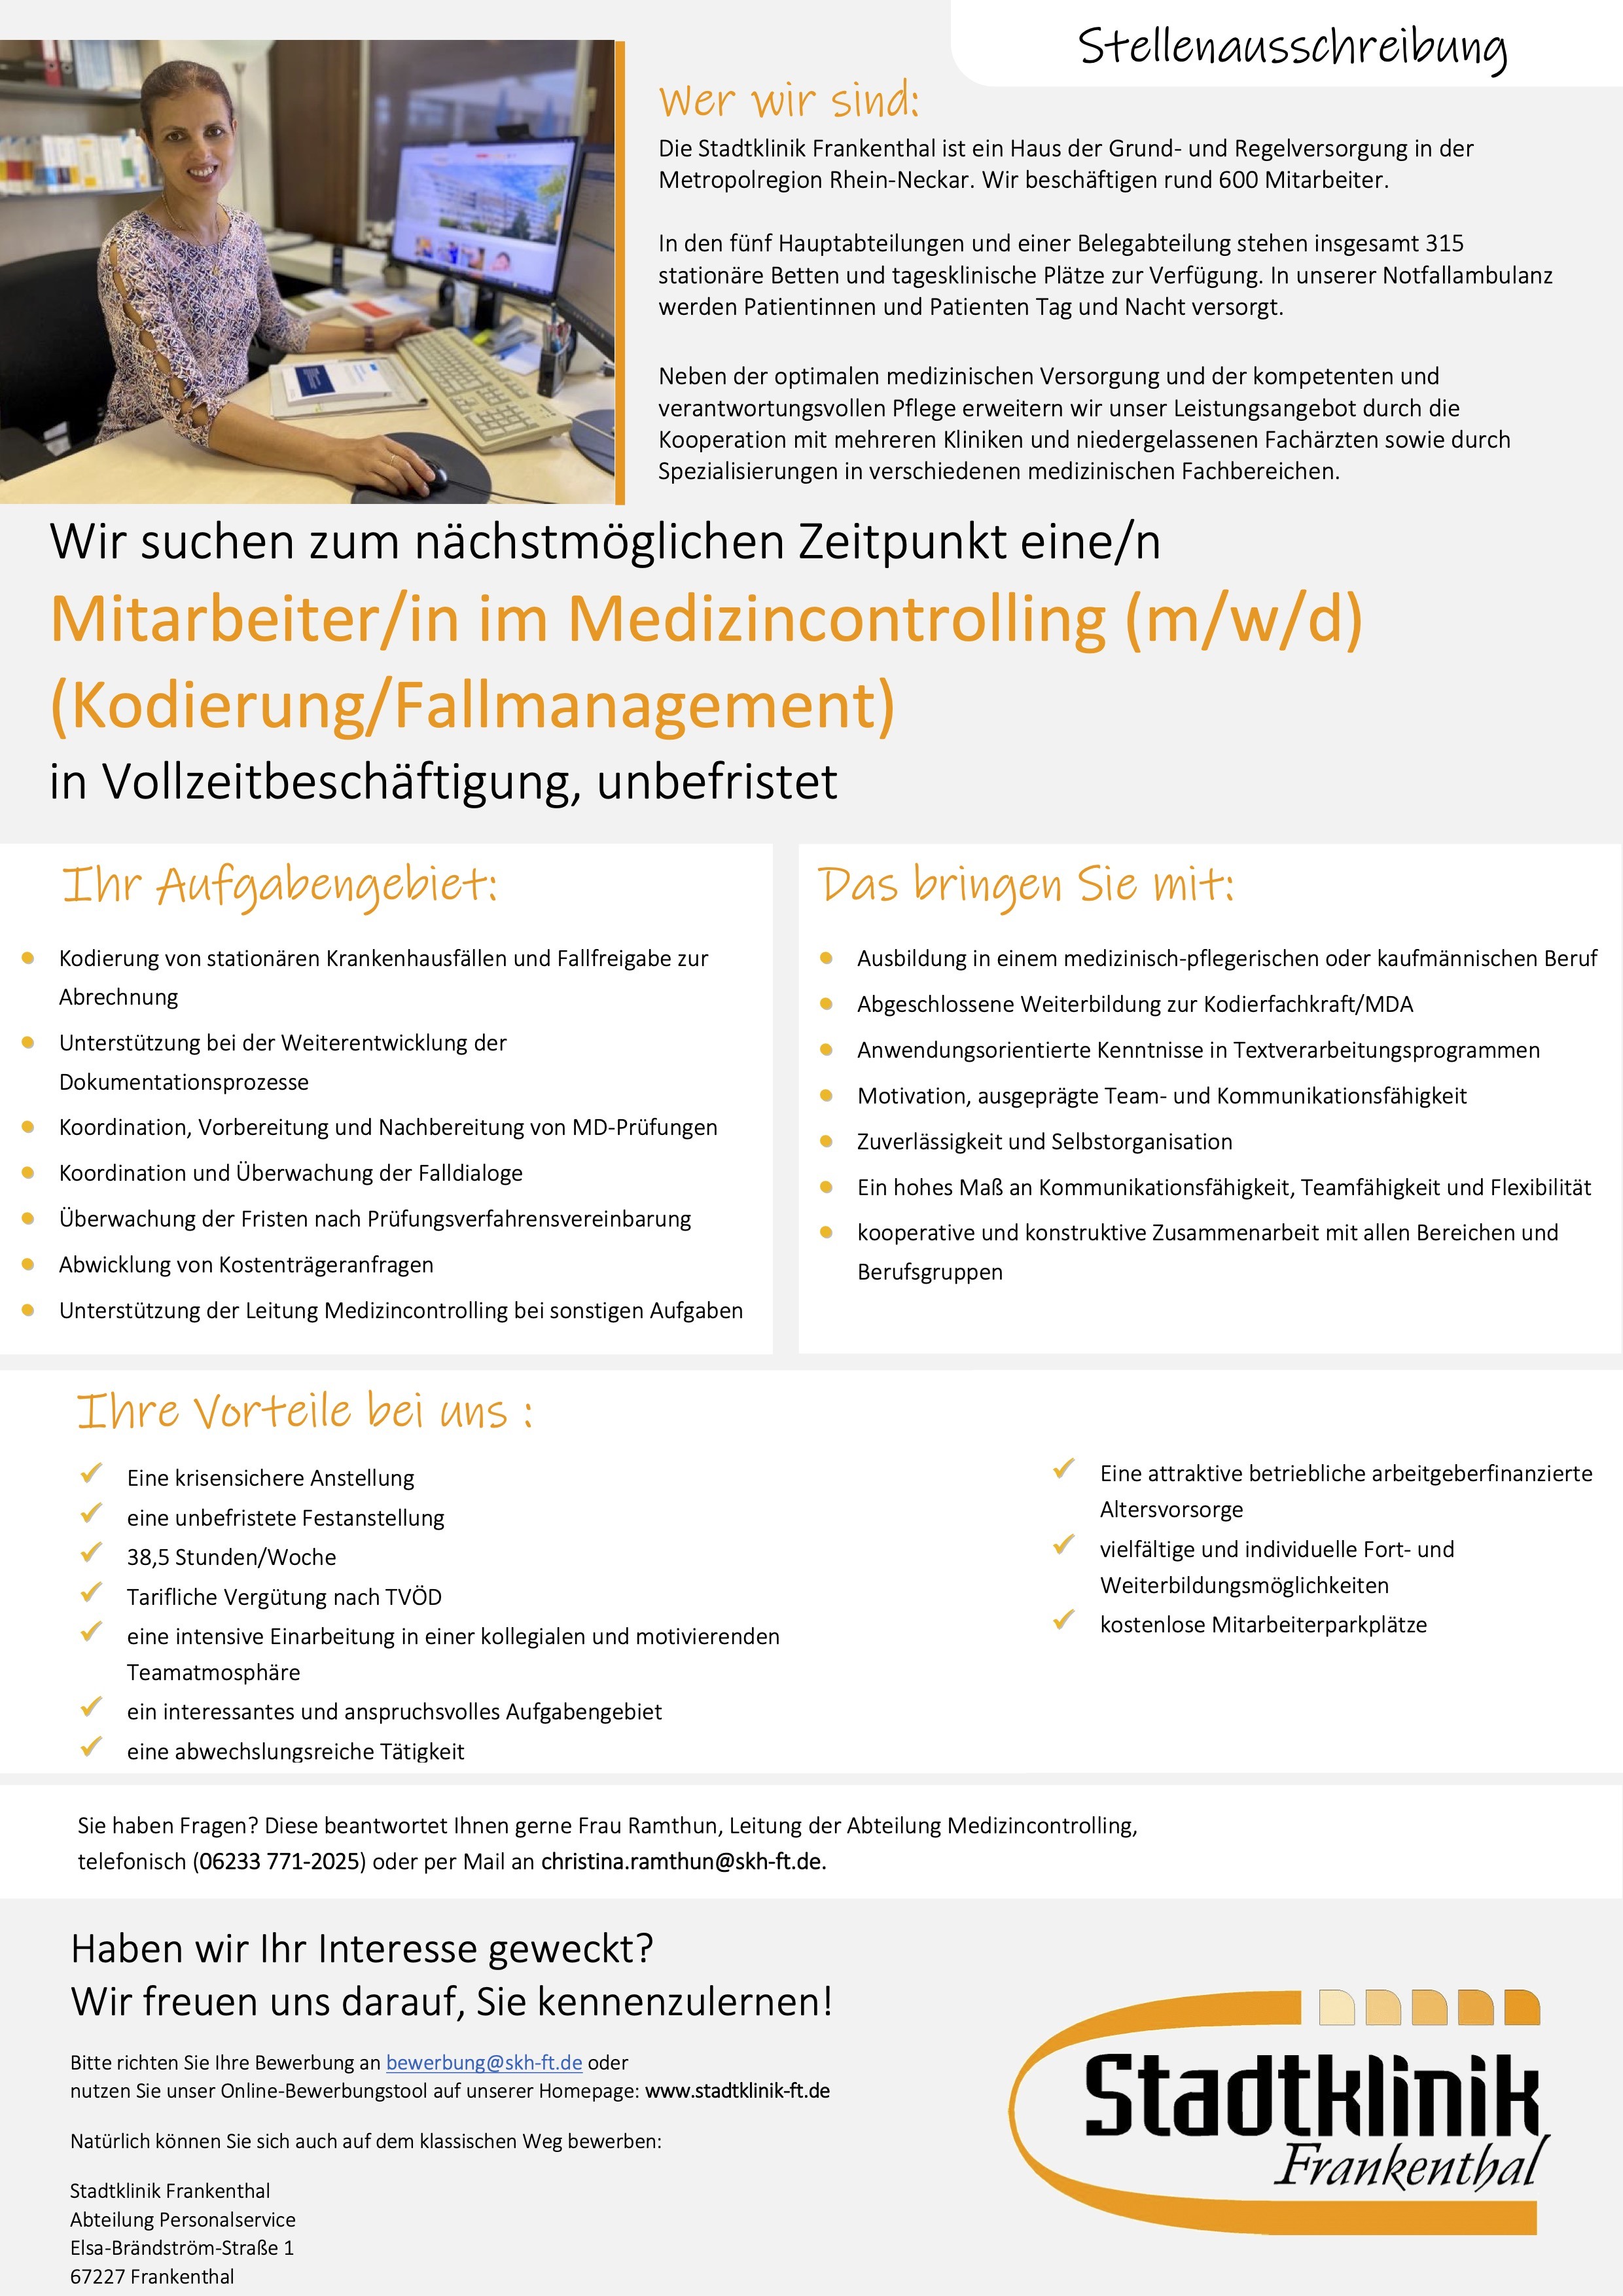 Mitarbeiter/in im Medizincontrolling (m/w/d) (Kodierung/Fallmanagement)